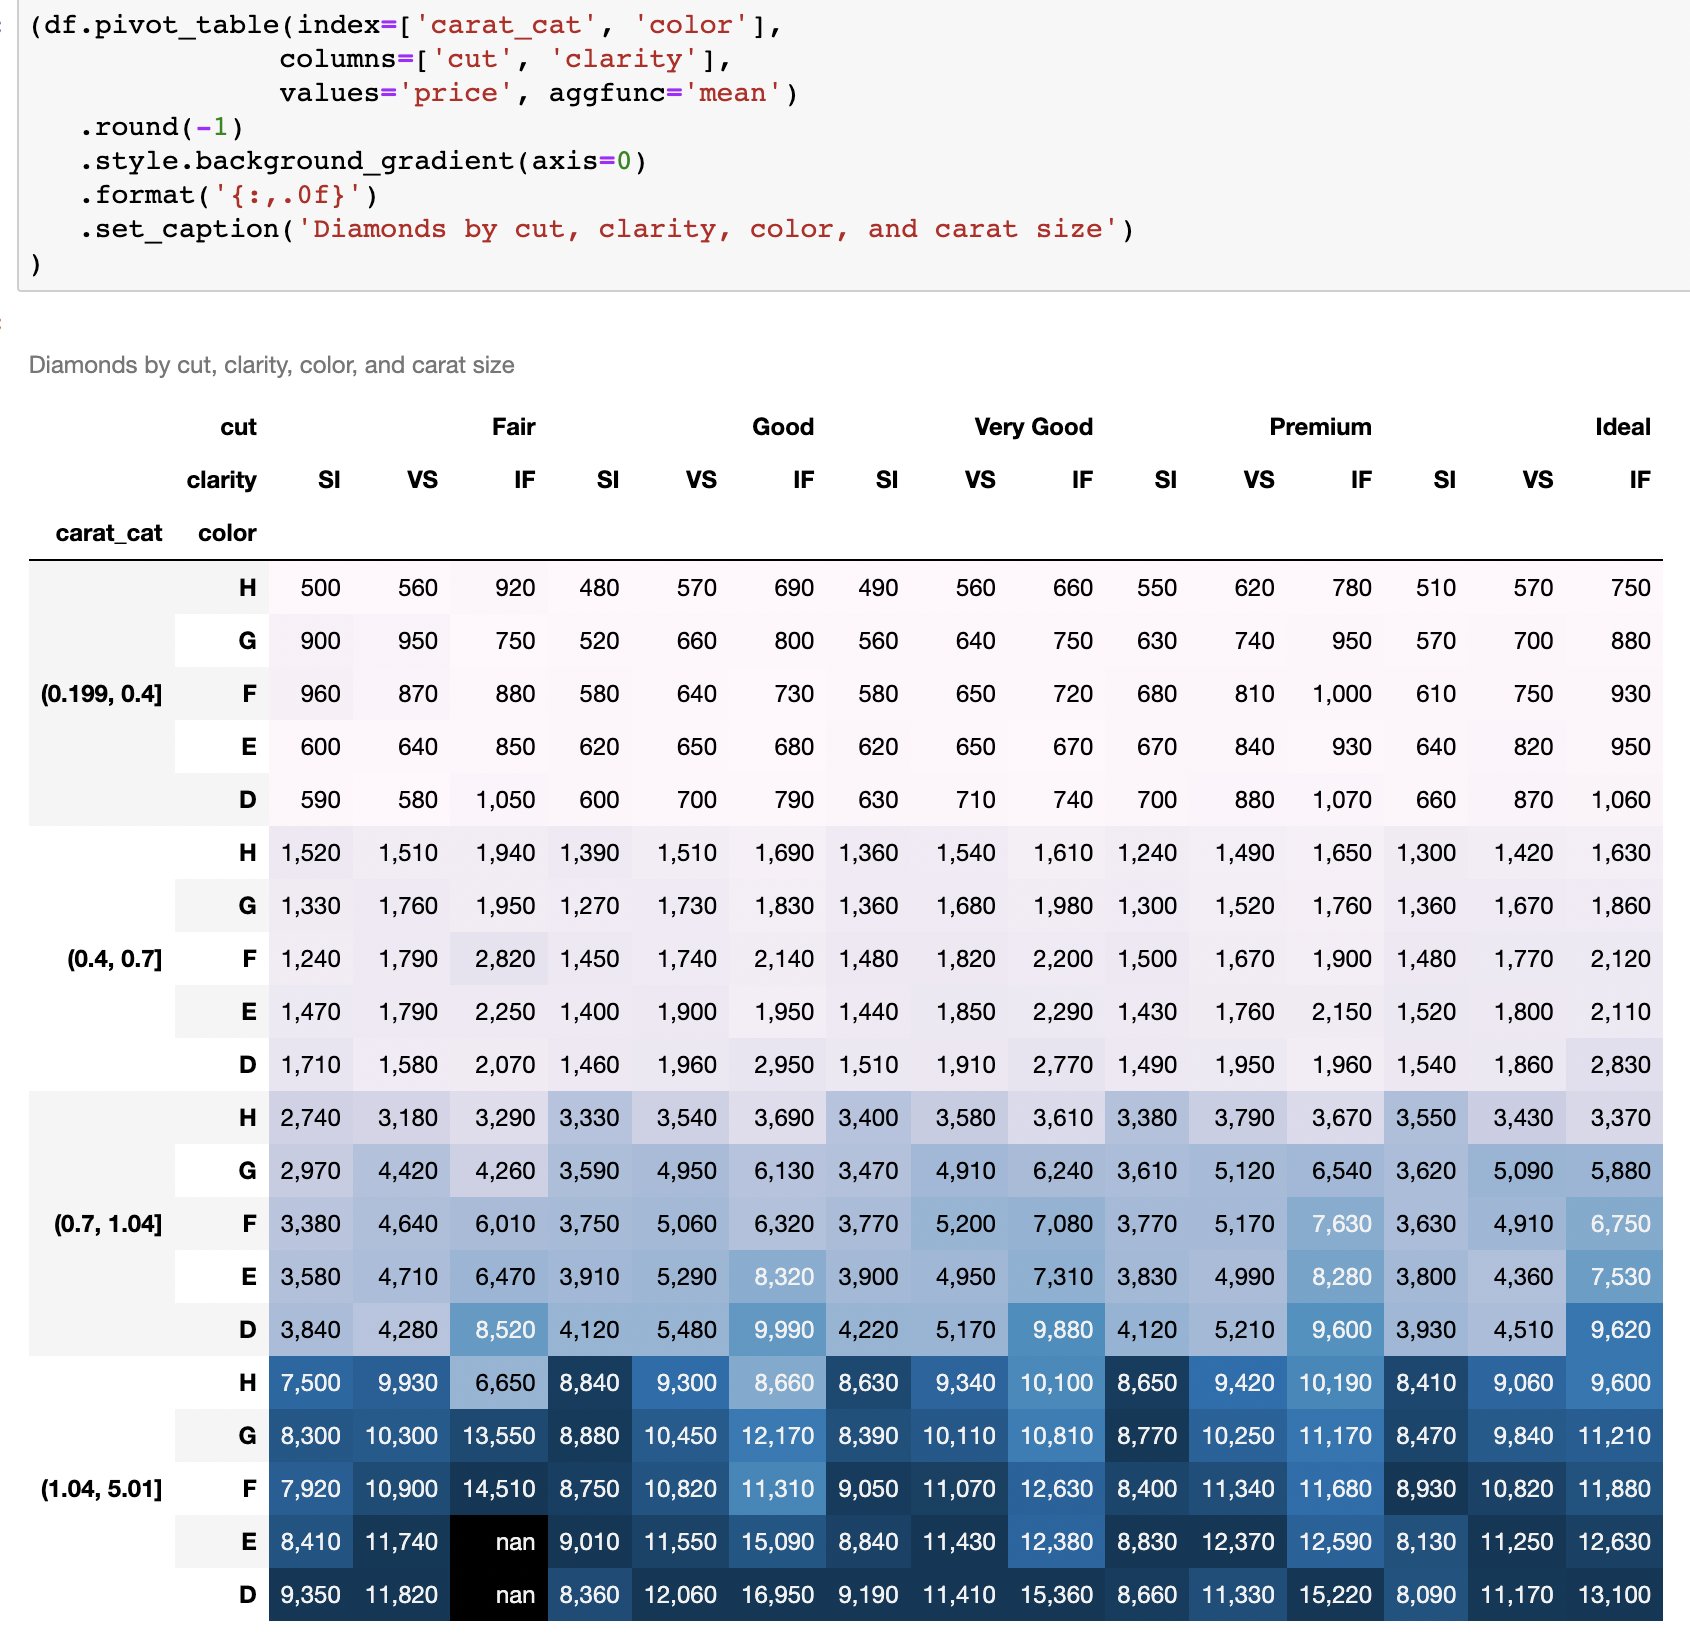 Teddy Petrou đã chia sẻ một ví dụ về cách sử dụng bảng tổng hợp để phân tích dữ liệu. Nếu bạn quan tâm đến việc tìm hiểu cách sử dụng bảng tổng hợp bằng Python, hãy xem hình liên quan để biết thêm chi tiết.